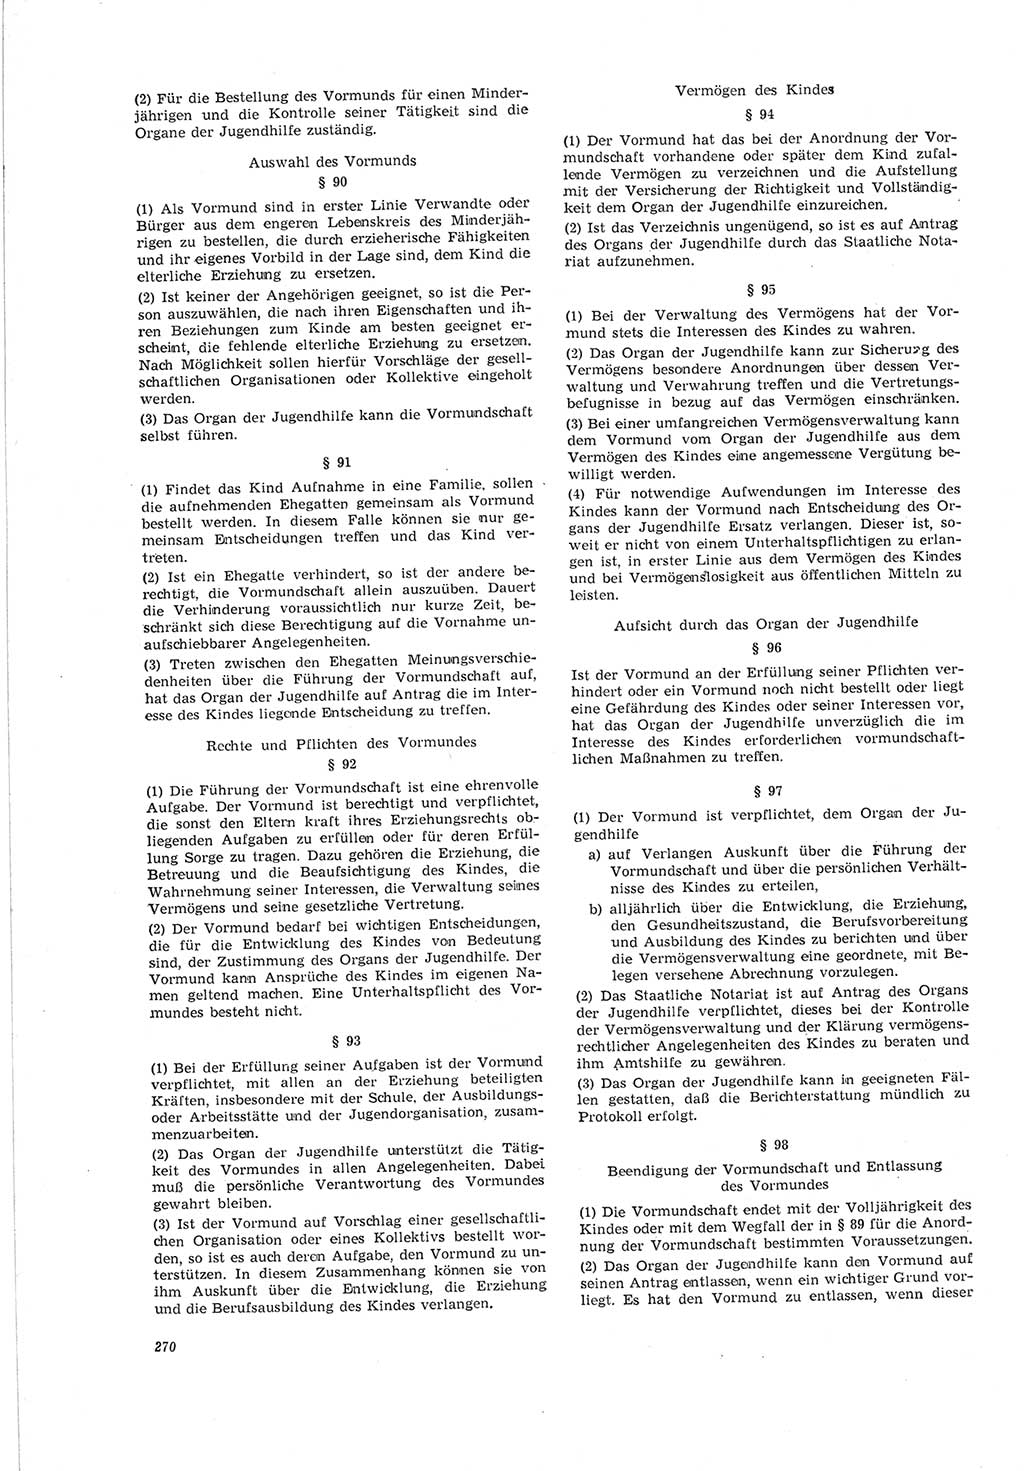 Neue Justiz (NJ), Zeitschrift für Recht und Rechtswissenschaft [Deutsche Demokratische Republik (DDR)], 19. Jahrgang 1965, Seite 270 (NJ DDR 1965, S. 270)